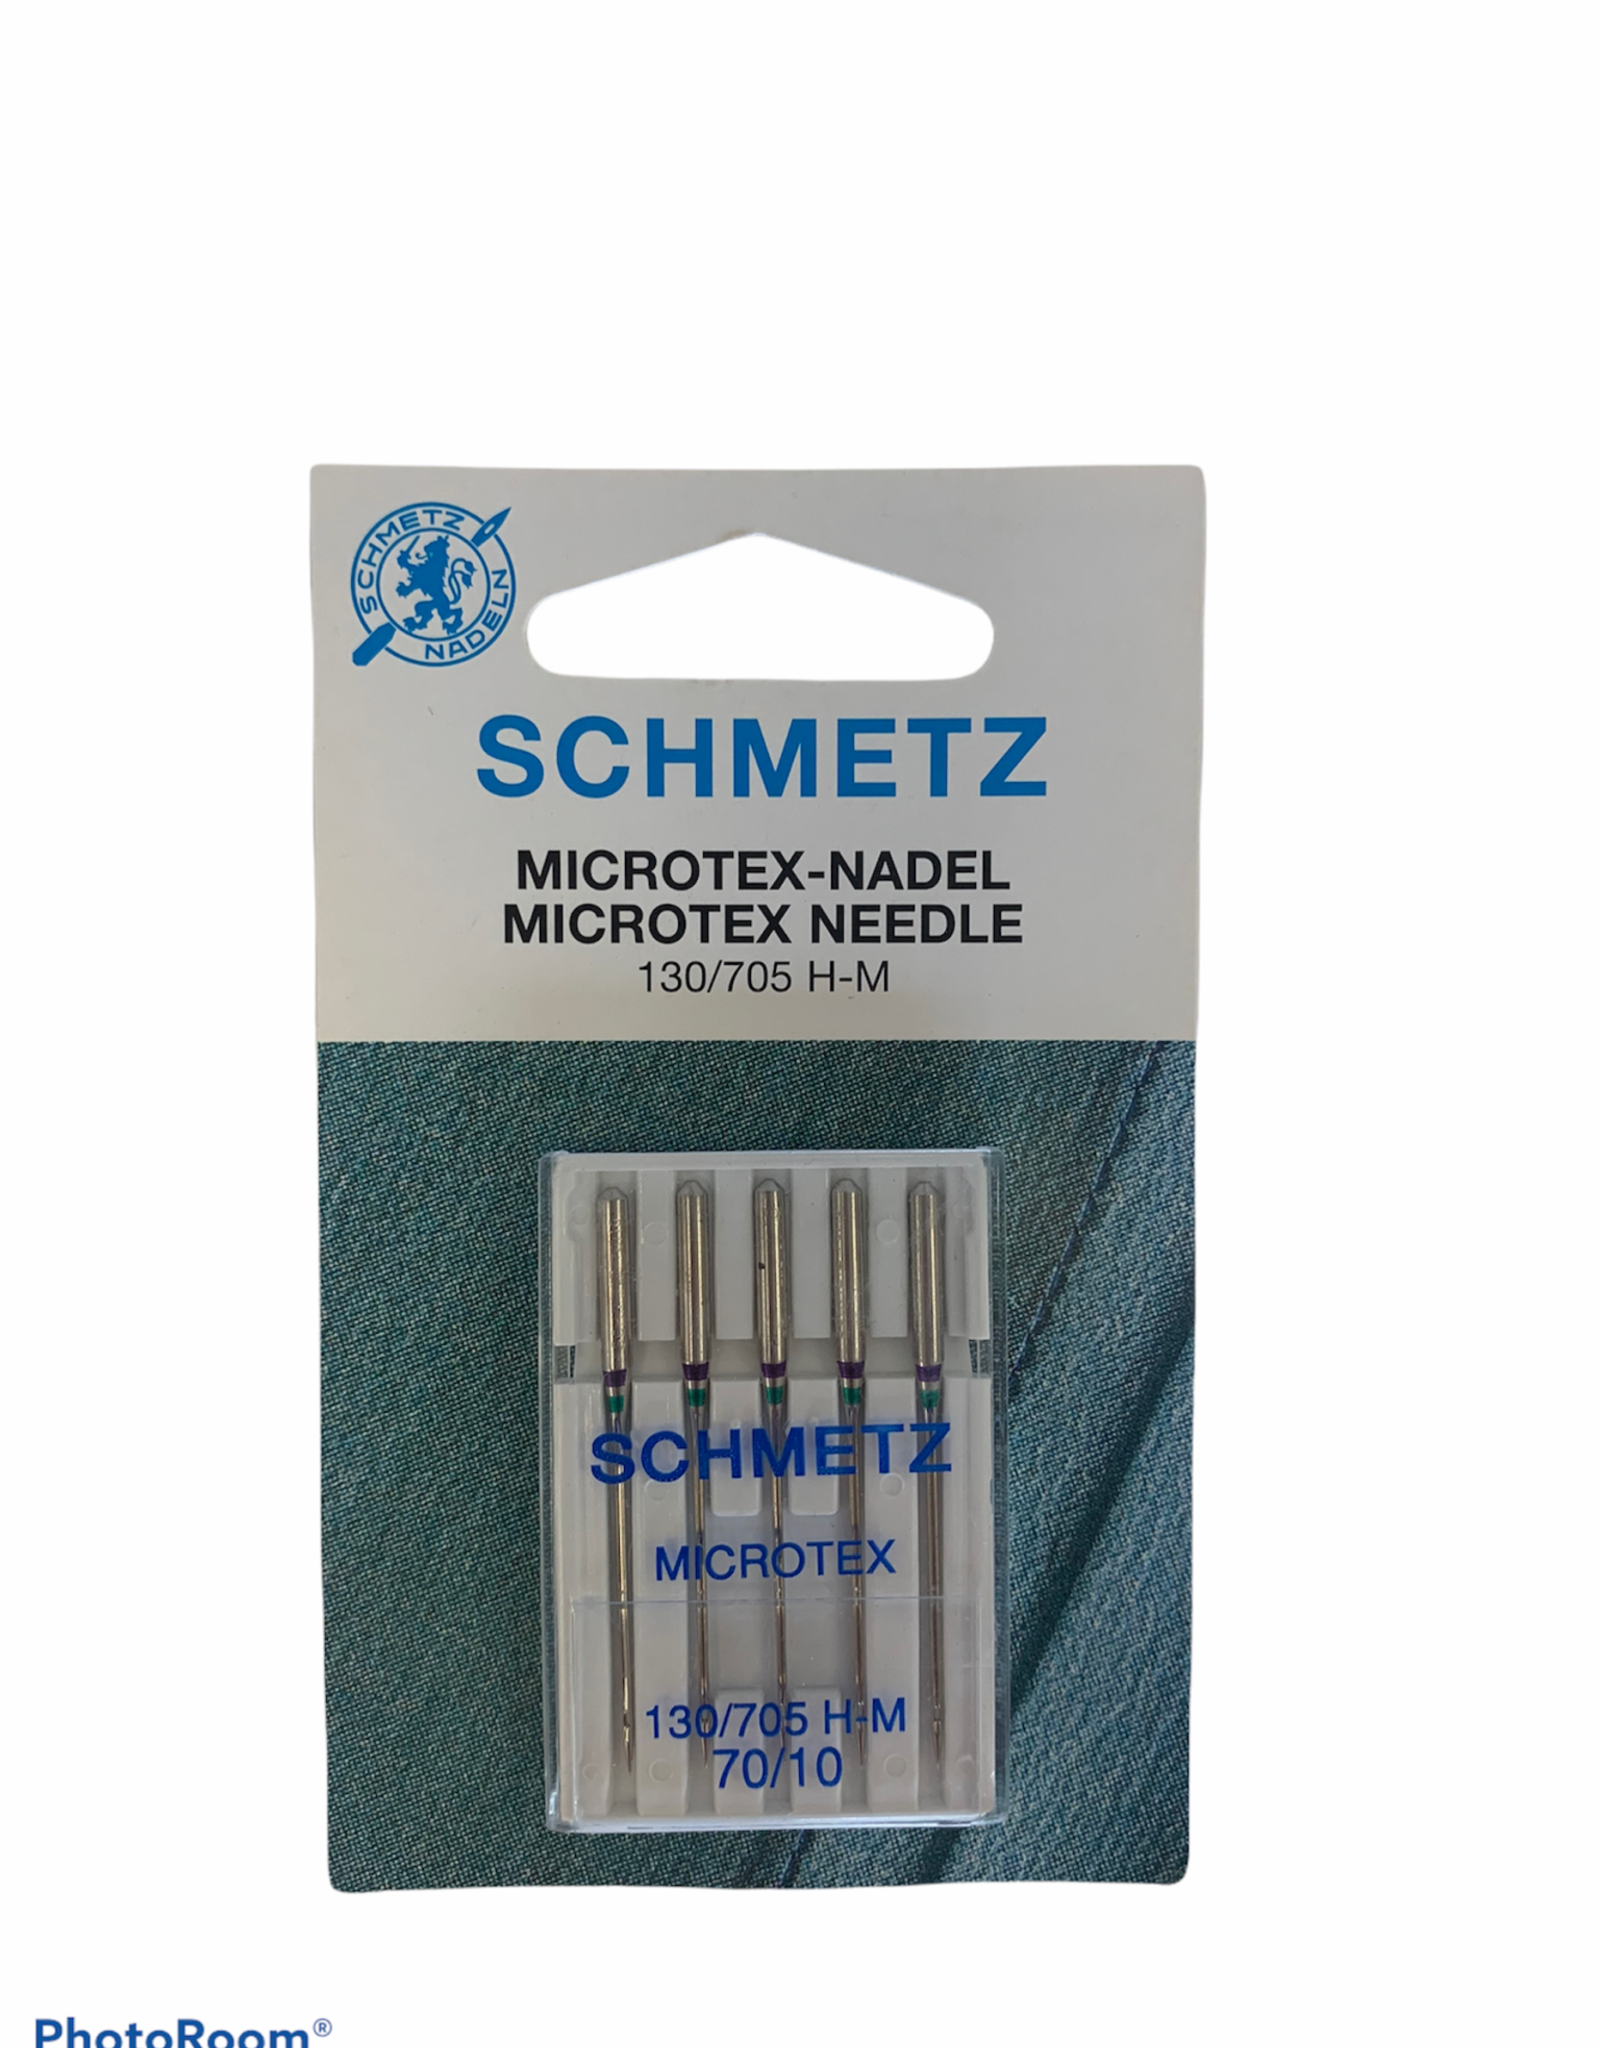 Schmetz Schmetz Microtex Needle 70/10, 130/705 H-M